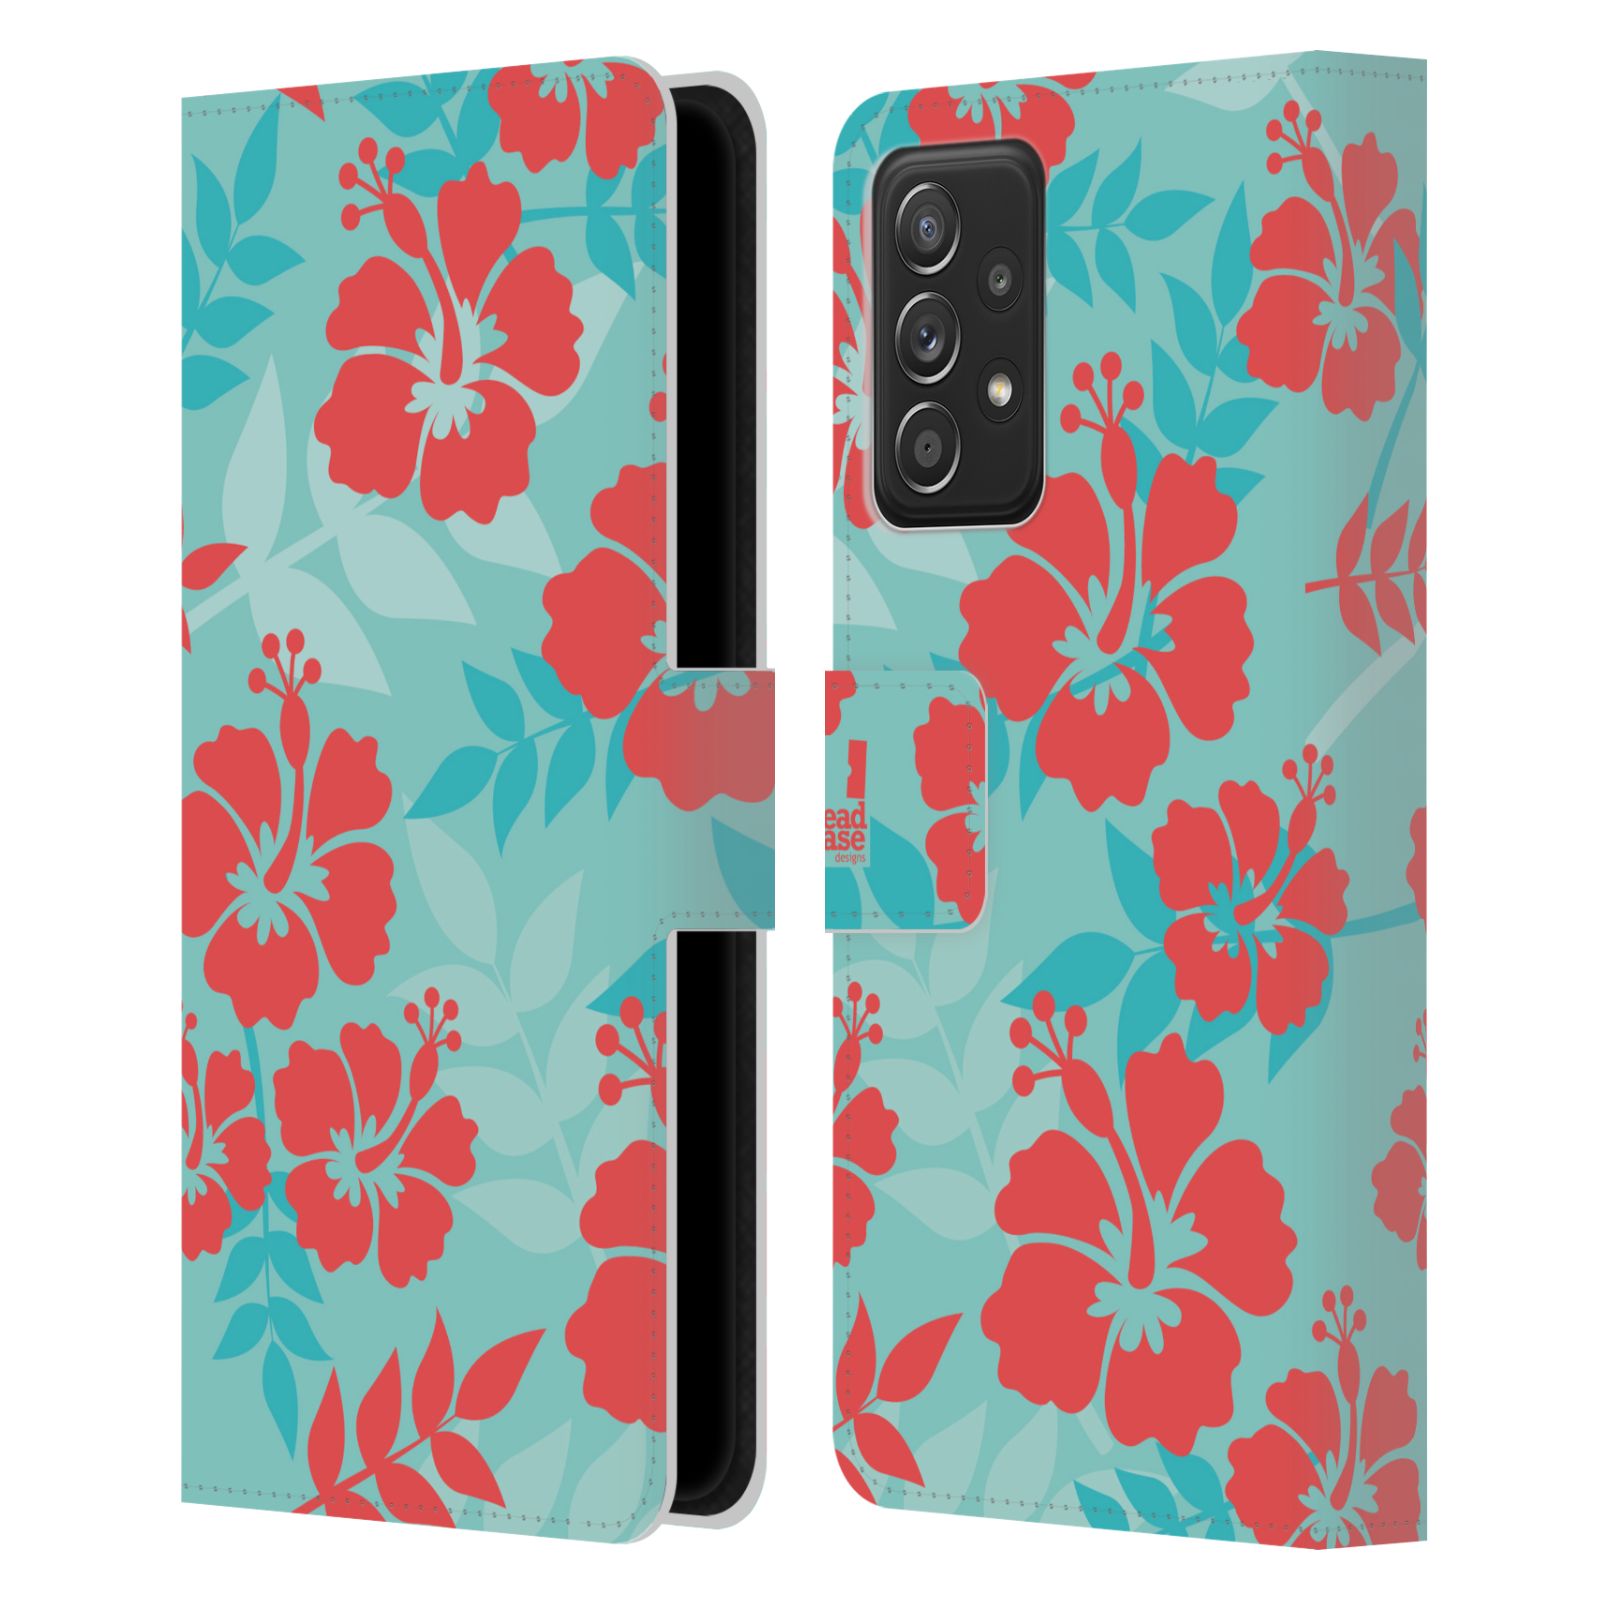 Pouzdro HEAD CASE na mobil Samsung Galaxy A52 / A52 5G / A52s 5G Havajský vzor Ibišek květ modrá a růžová